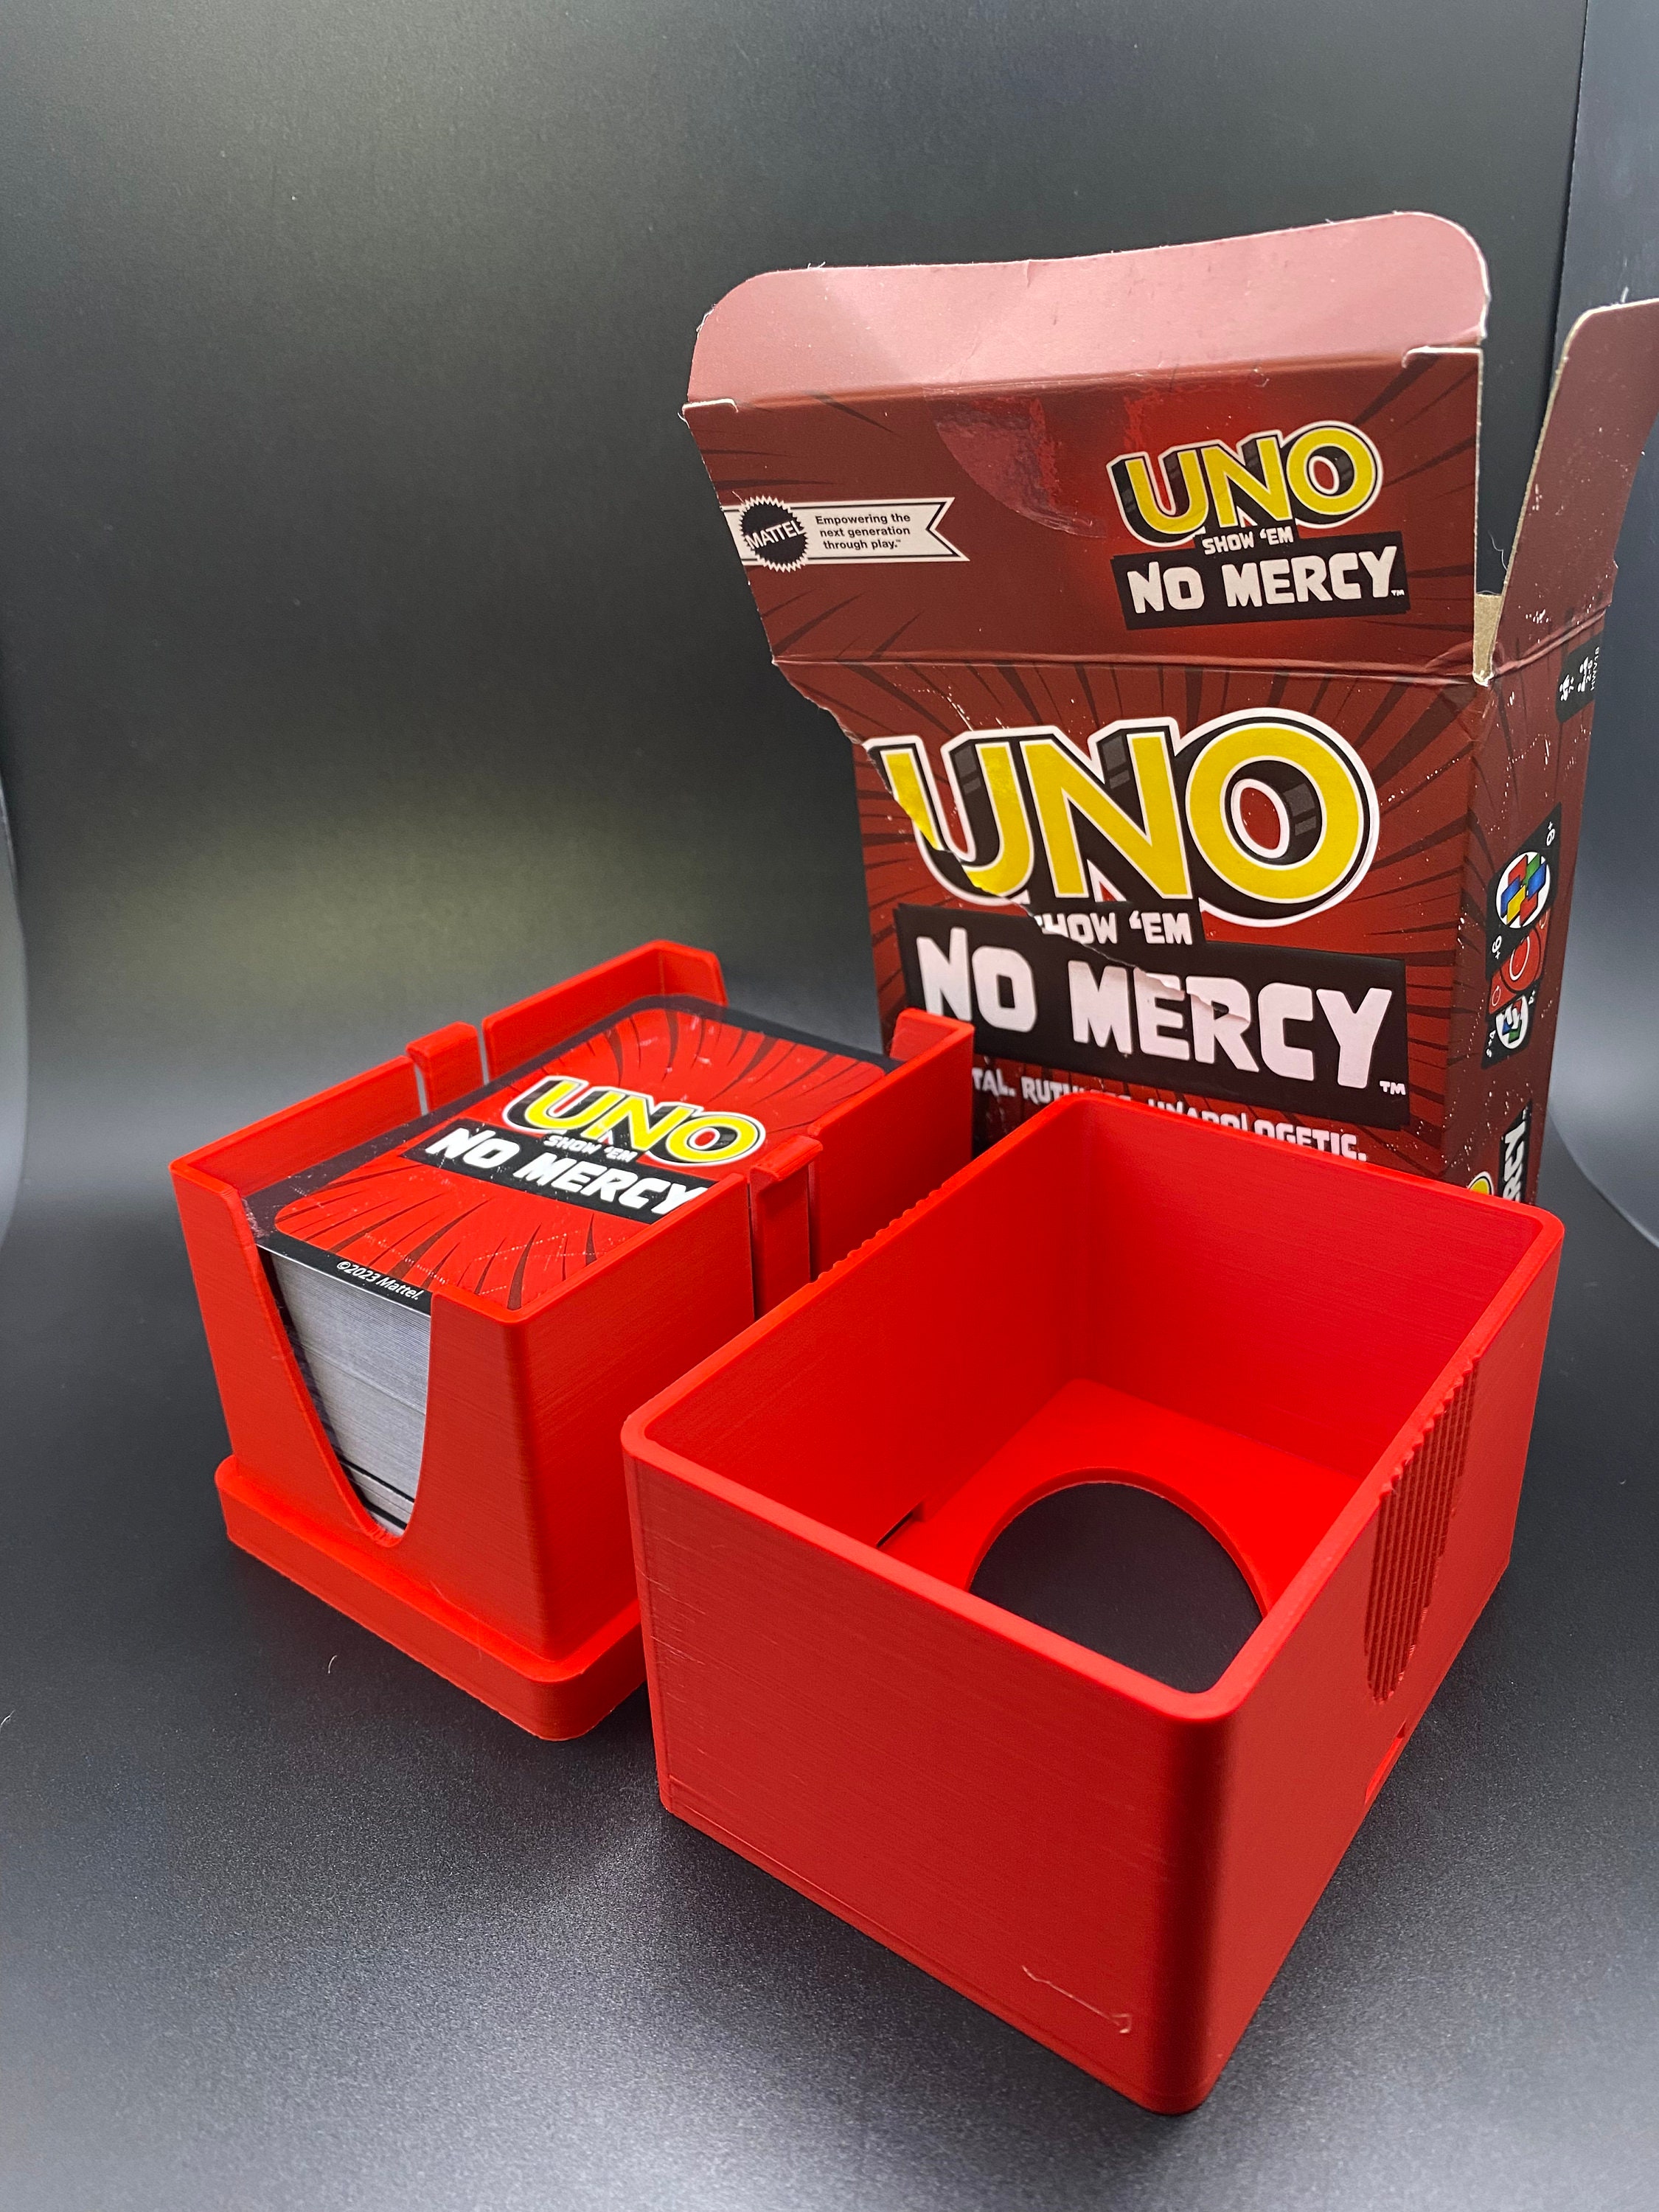 UNO junior - Simple Deck box by adc design - MakerWorld